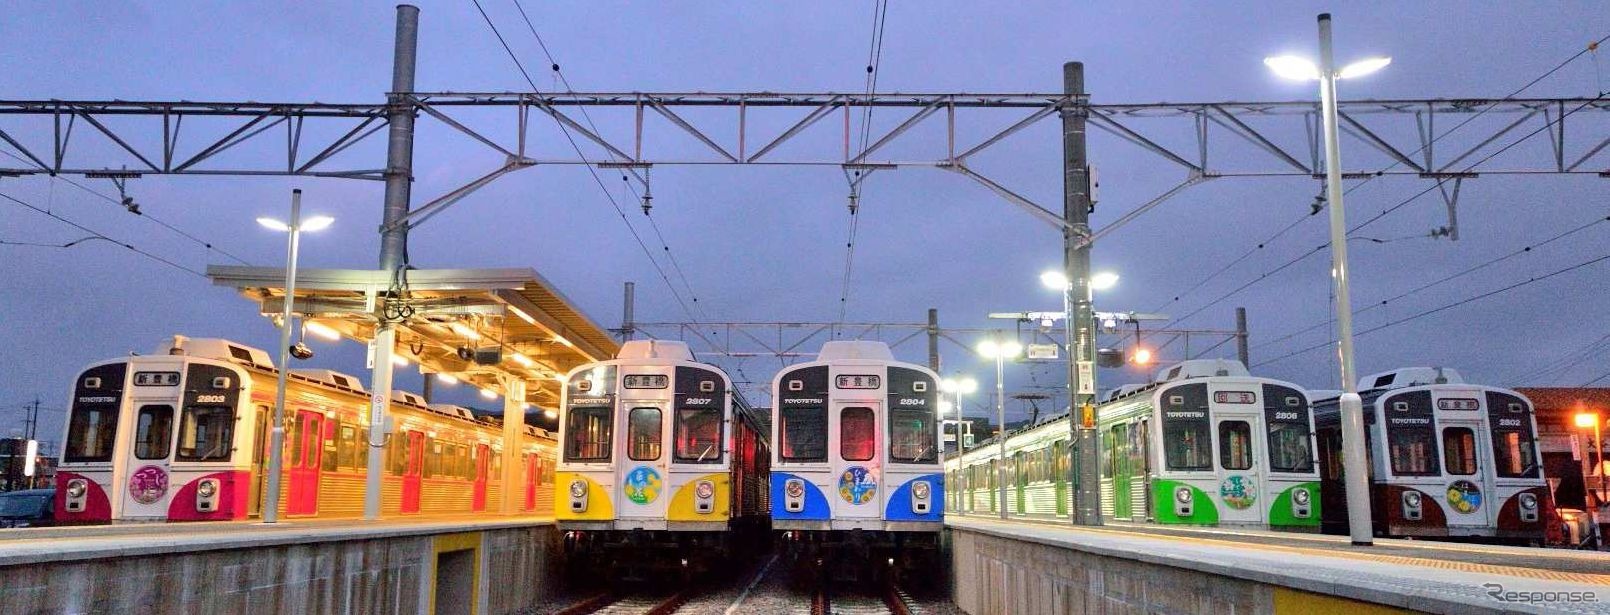 深夜に勢揃いする「カラフルトレイン」。東京急行電鉄から導入した7200系を改装した1800系が充てられている。